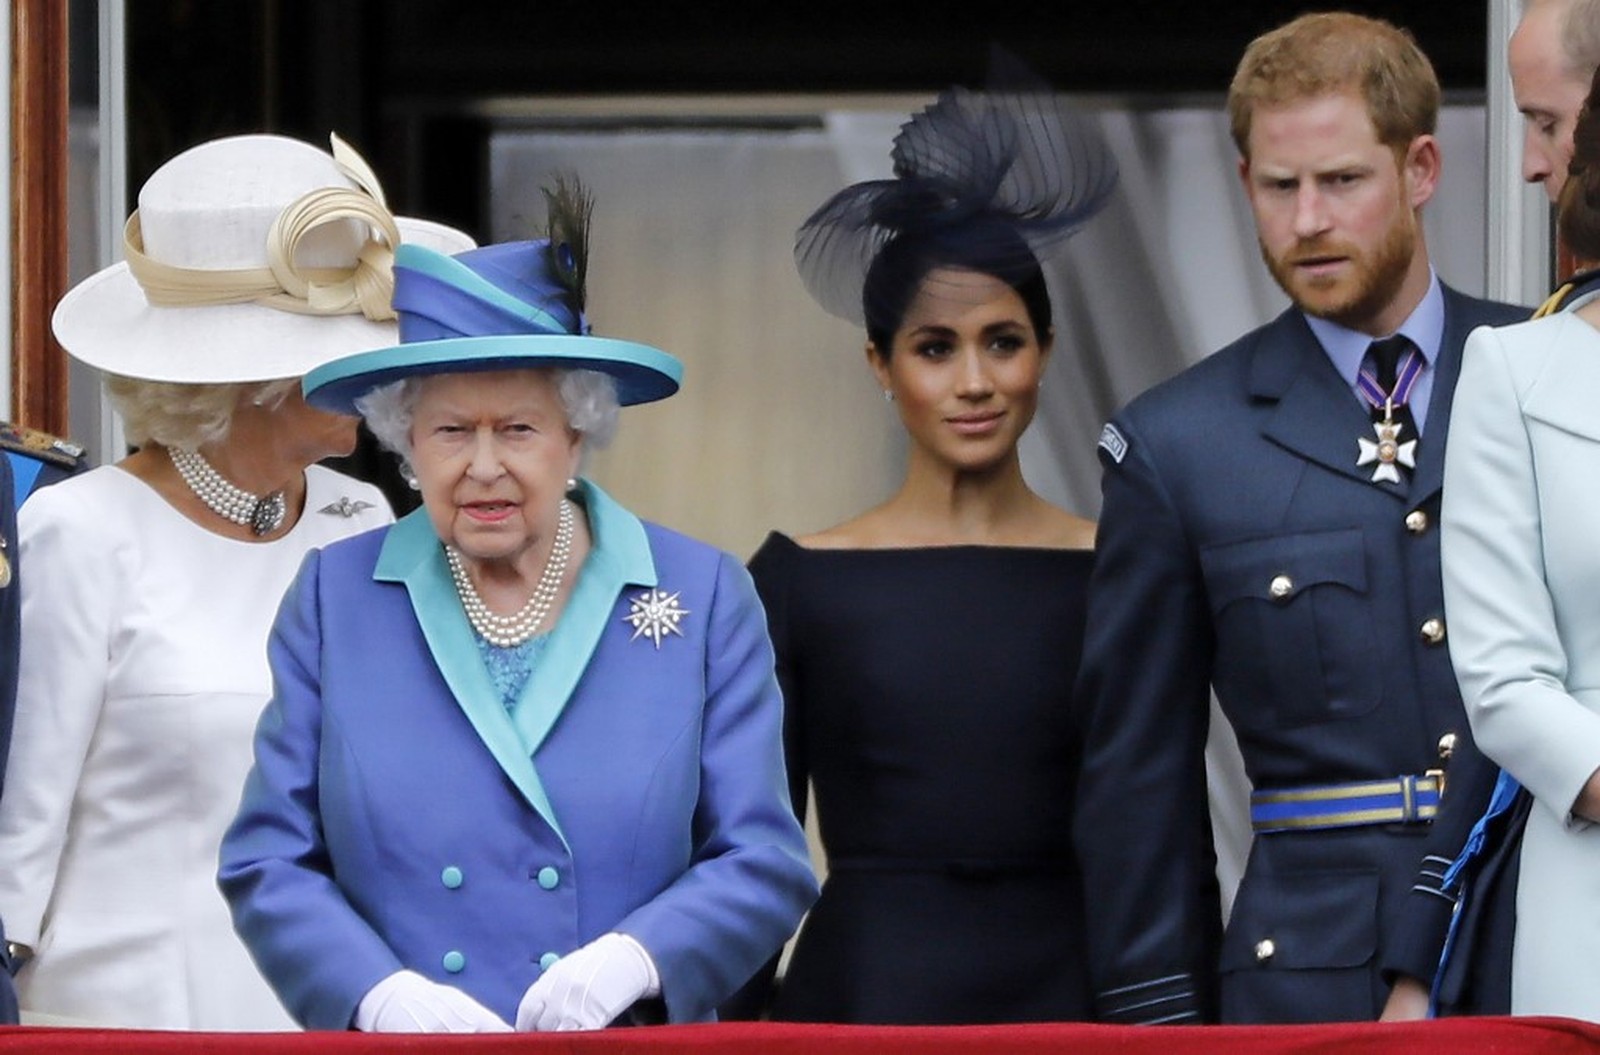 Crise na realeza: Rainha Elizabeth II convoca reunião com Charles e William